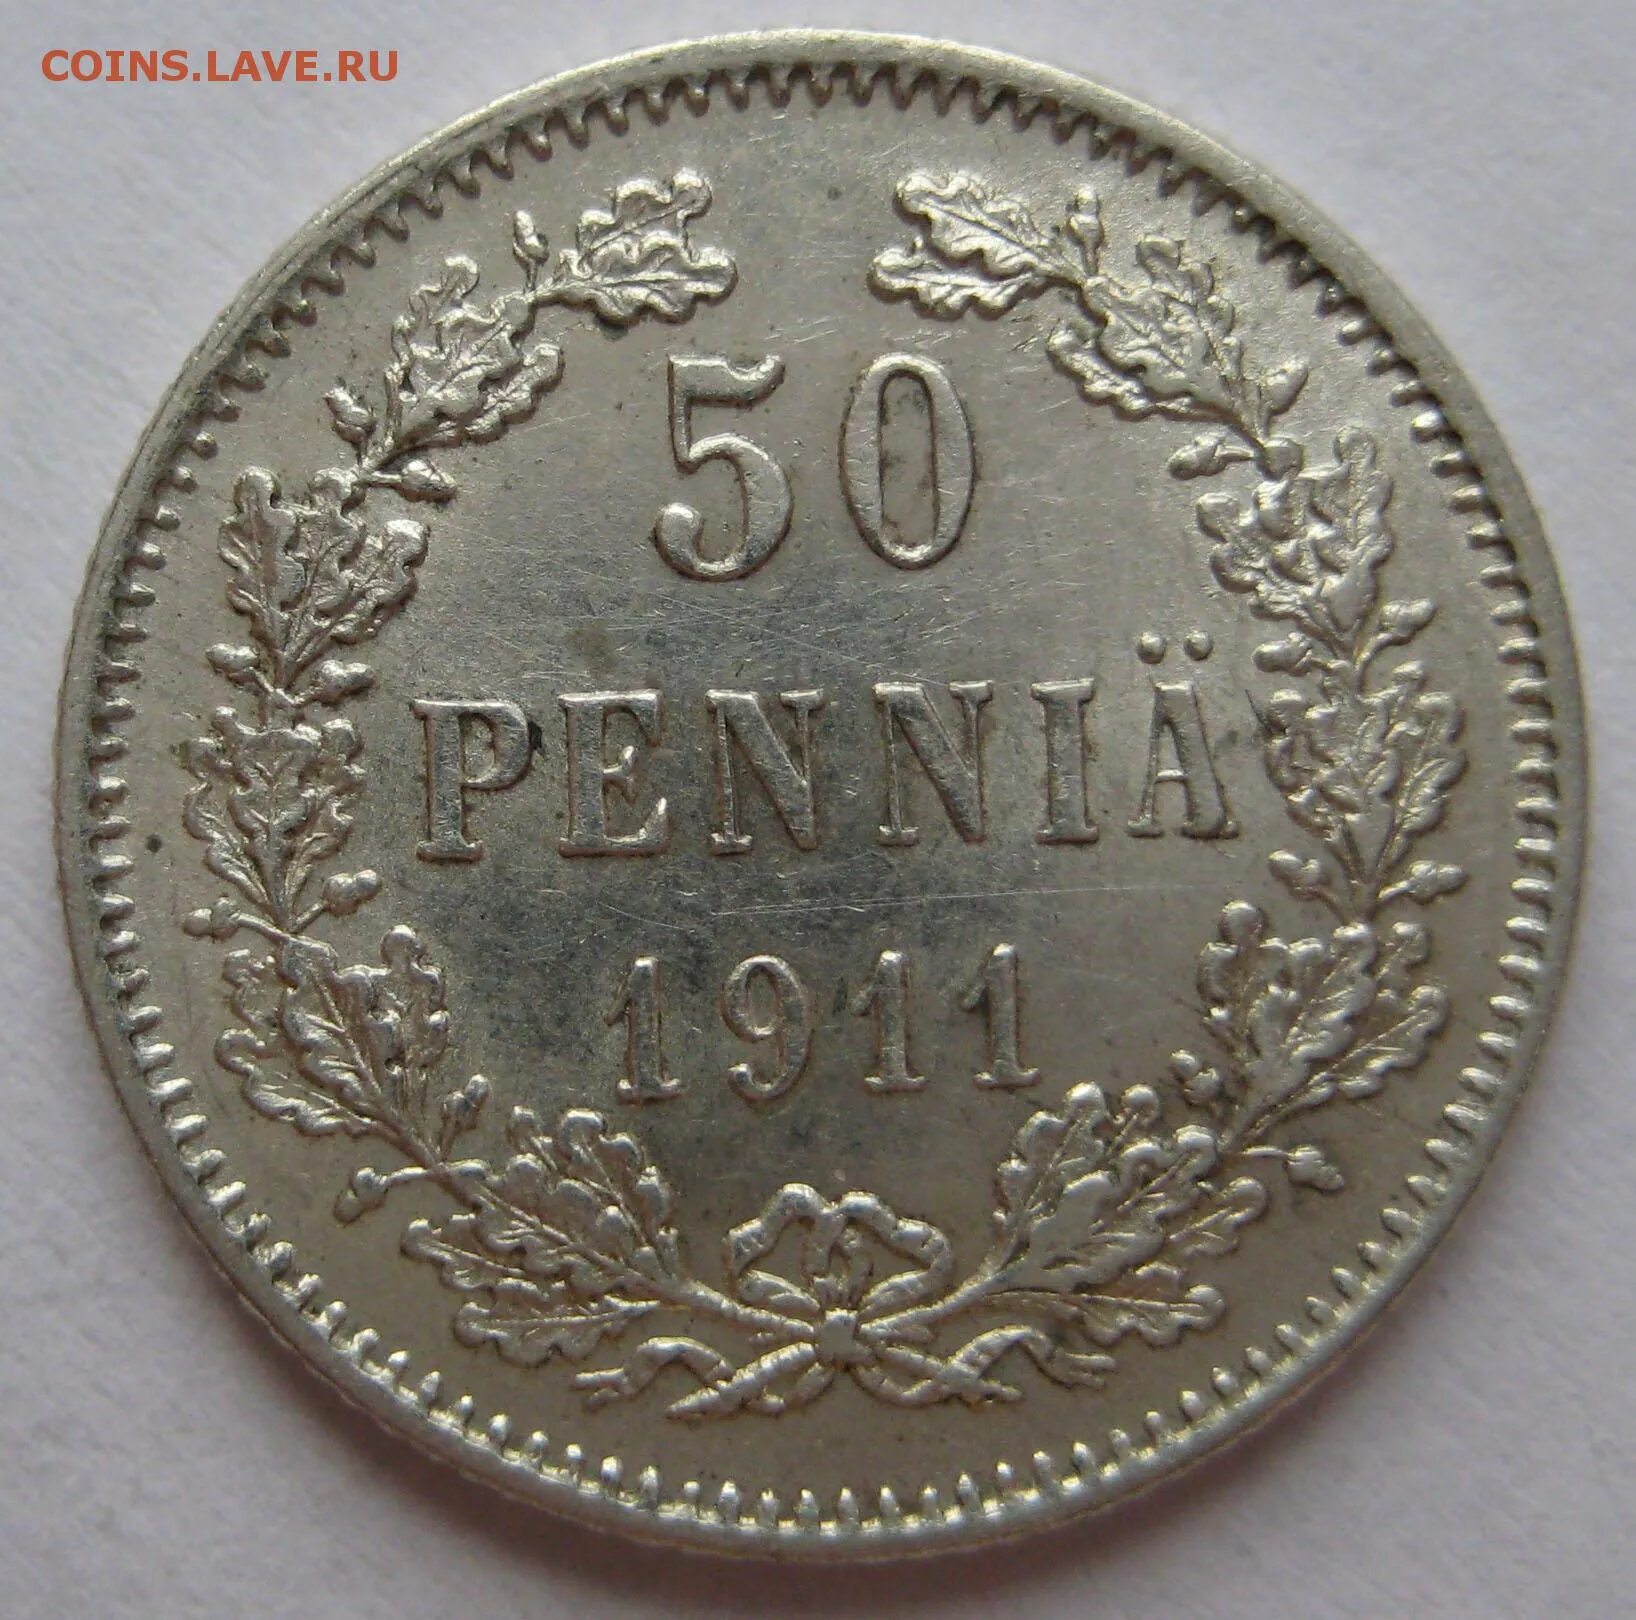 Пенний. 2 Марки 1900 г. 3/4 Рубля 5 zlot 1839 серебро цена.